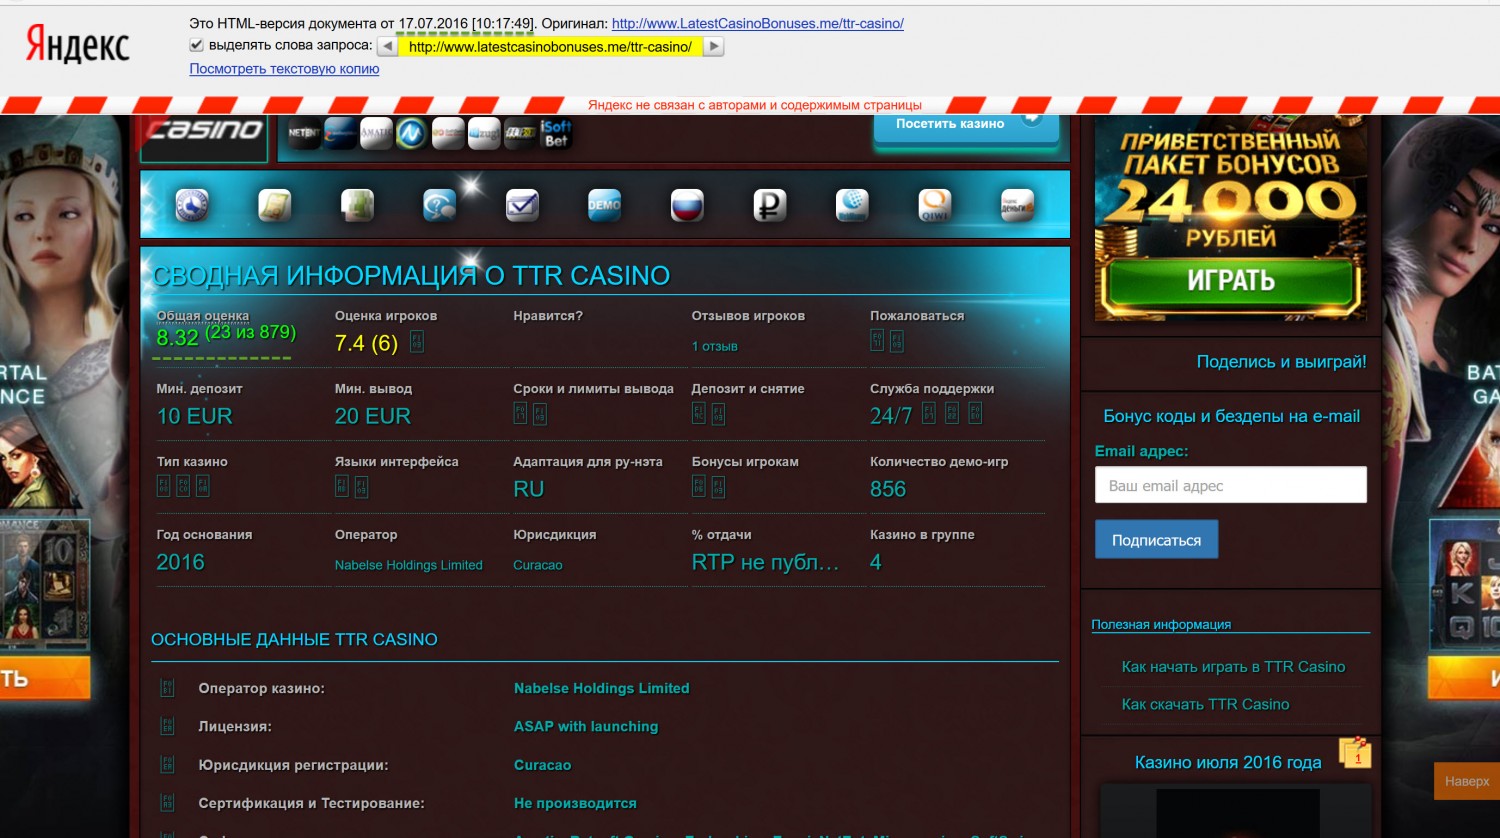 Лучшие лицензионные казино стилия grand casino by casino информация